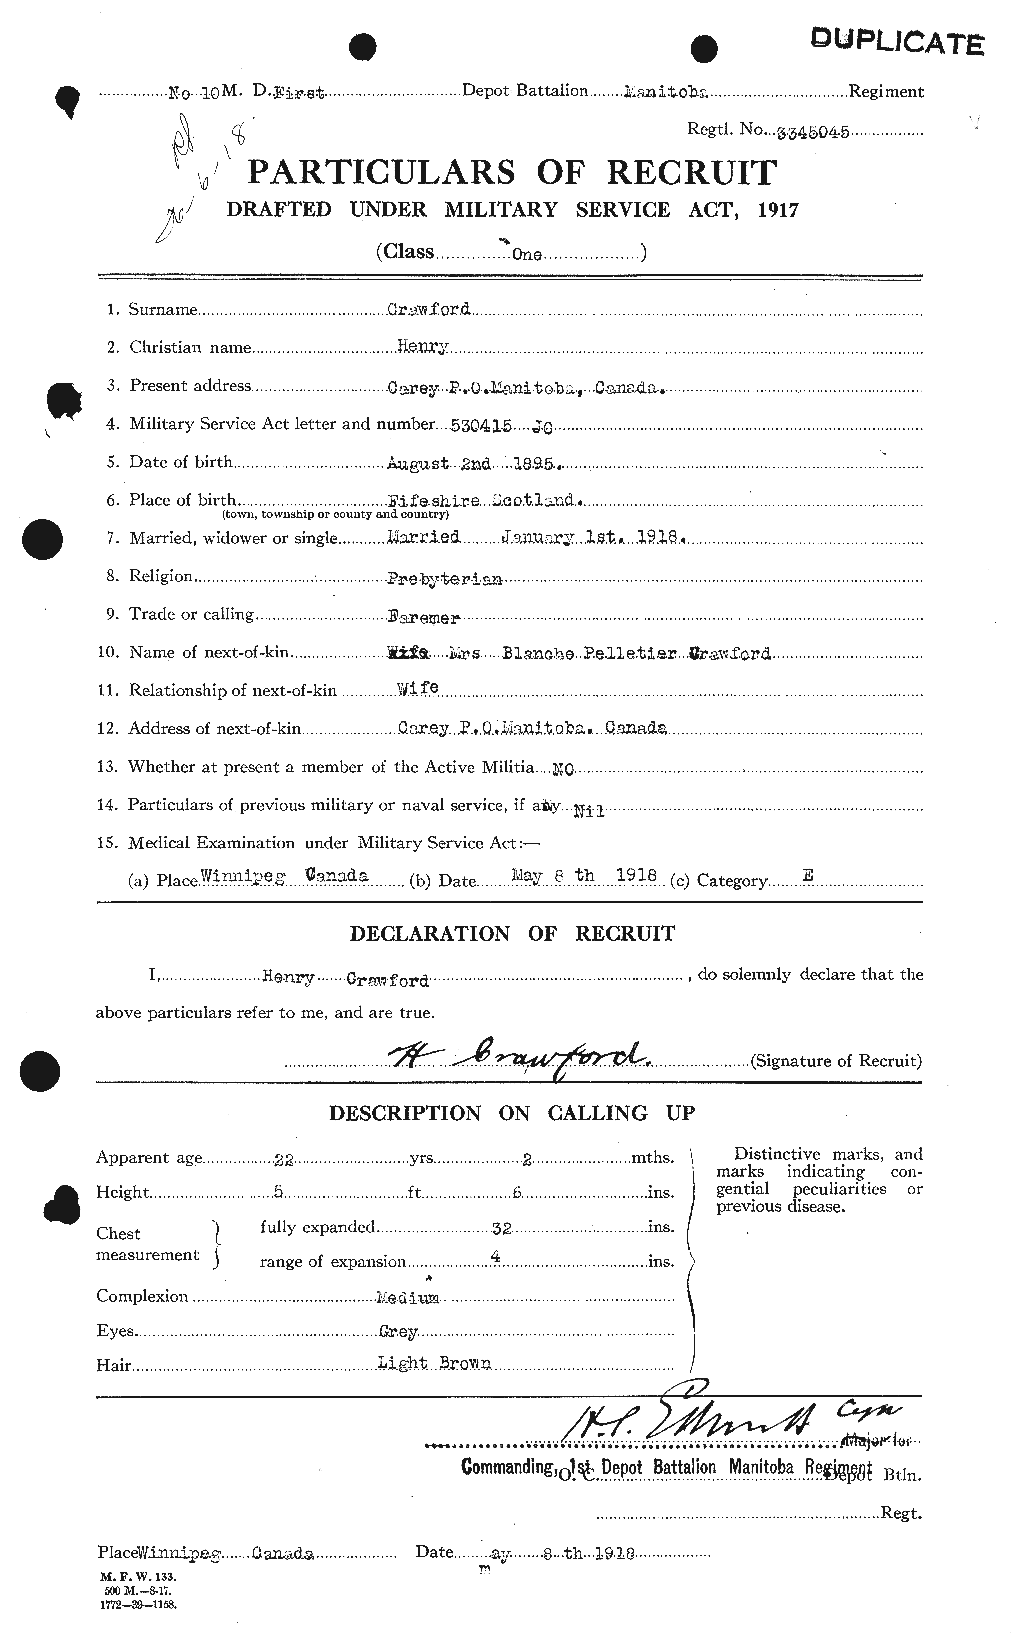 Dossiers du Personnel de la Première Guerre mondiale - CEC 060574a